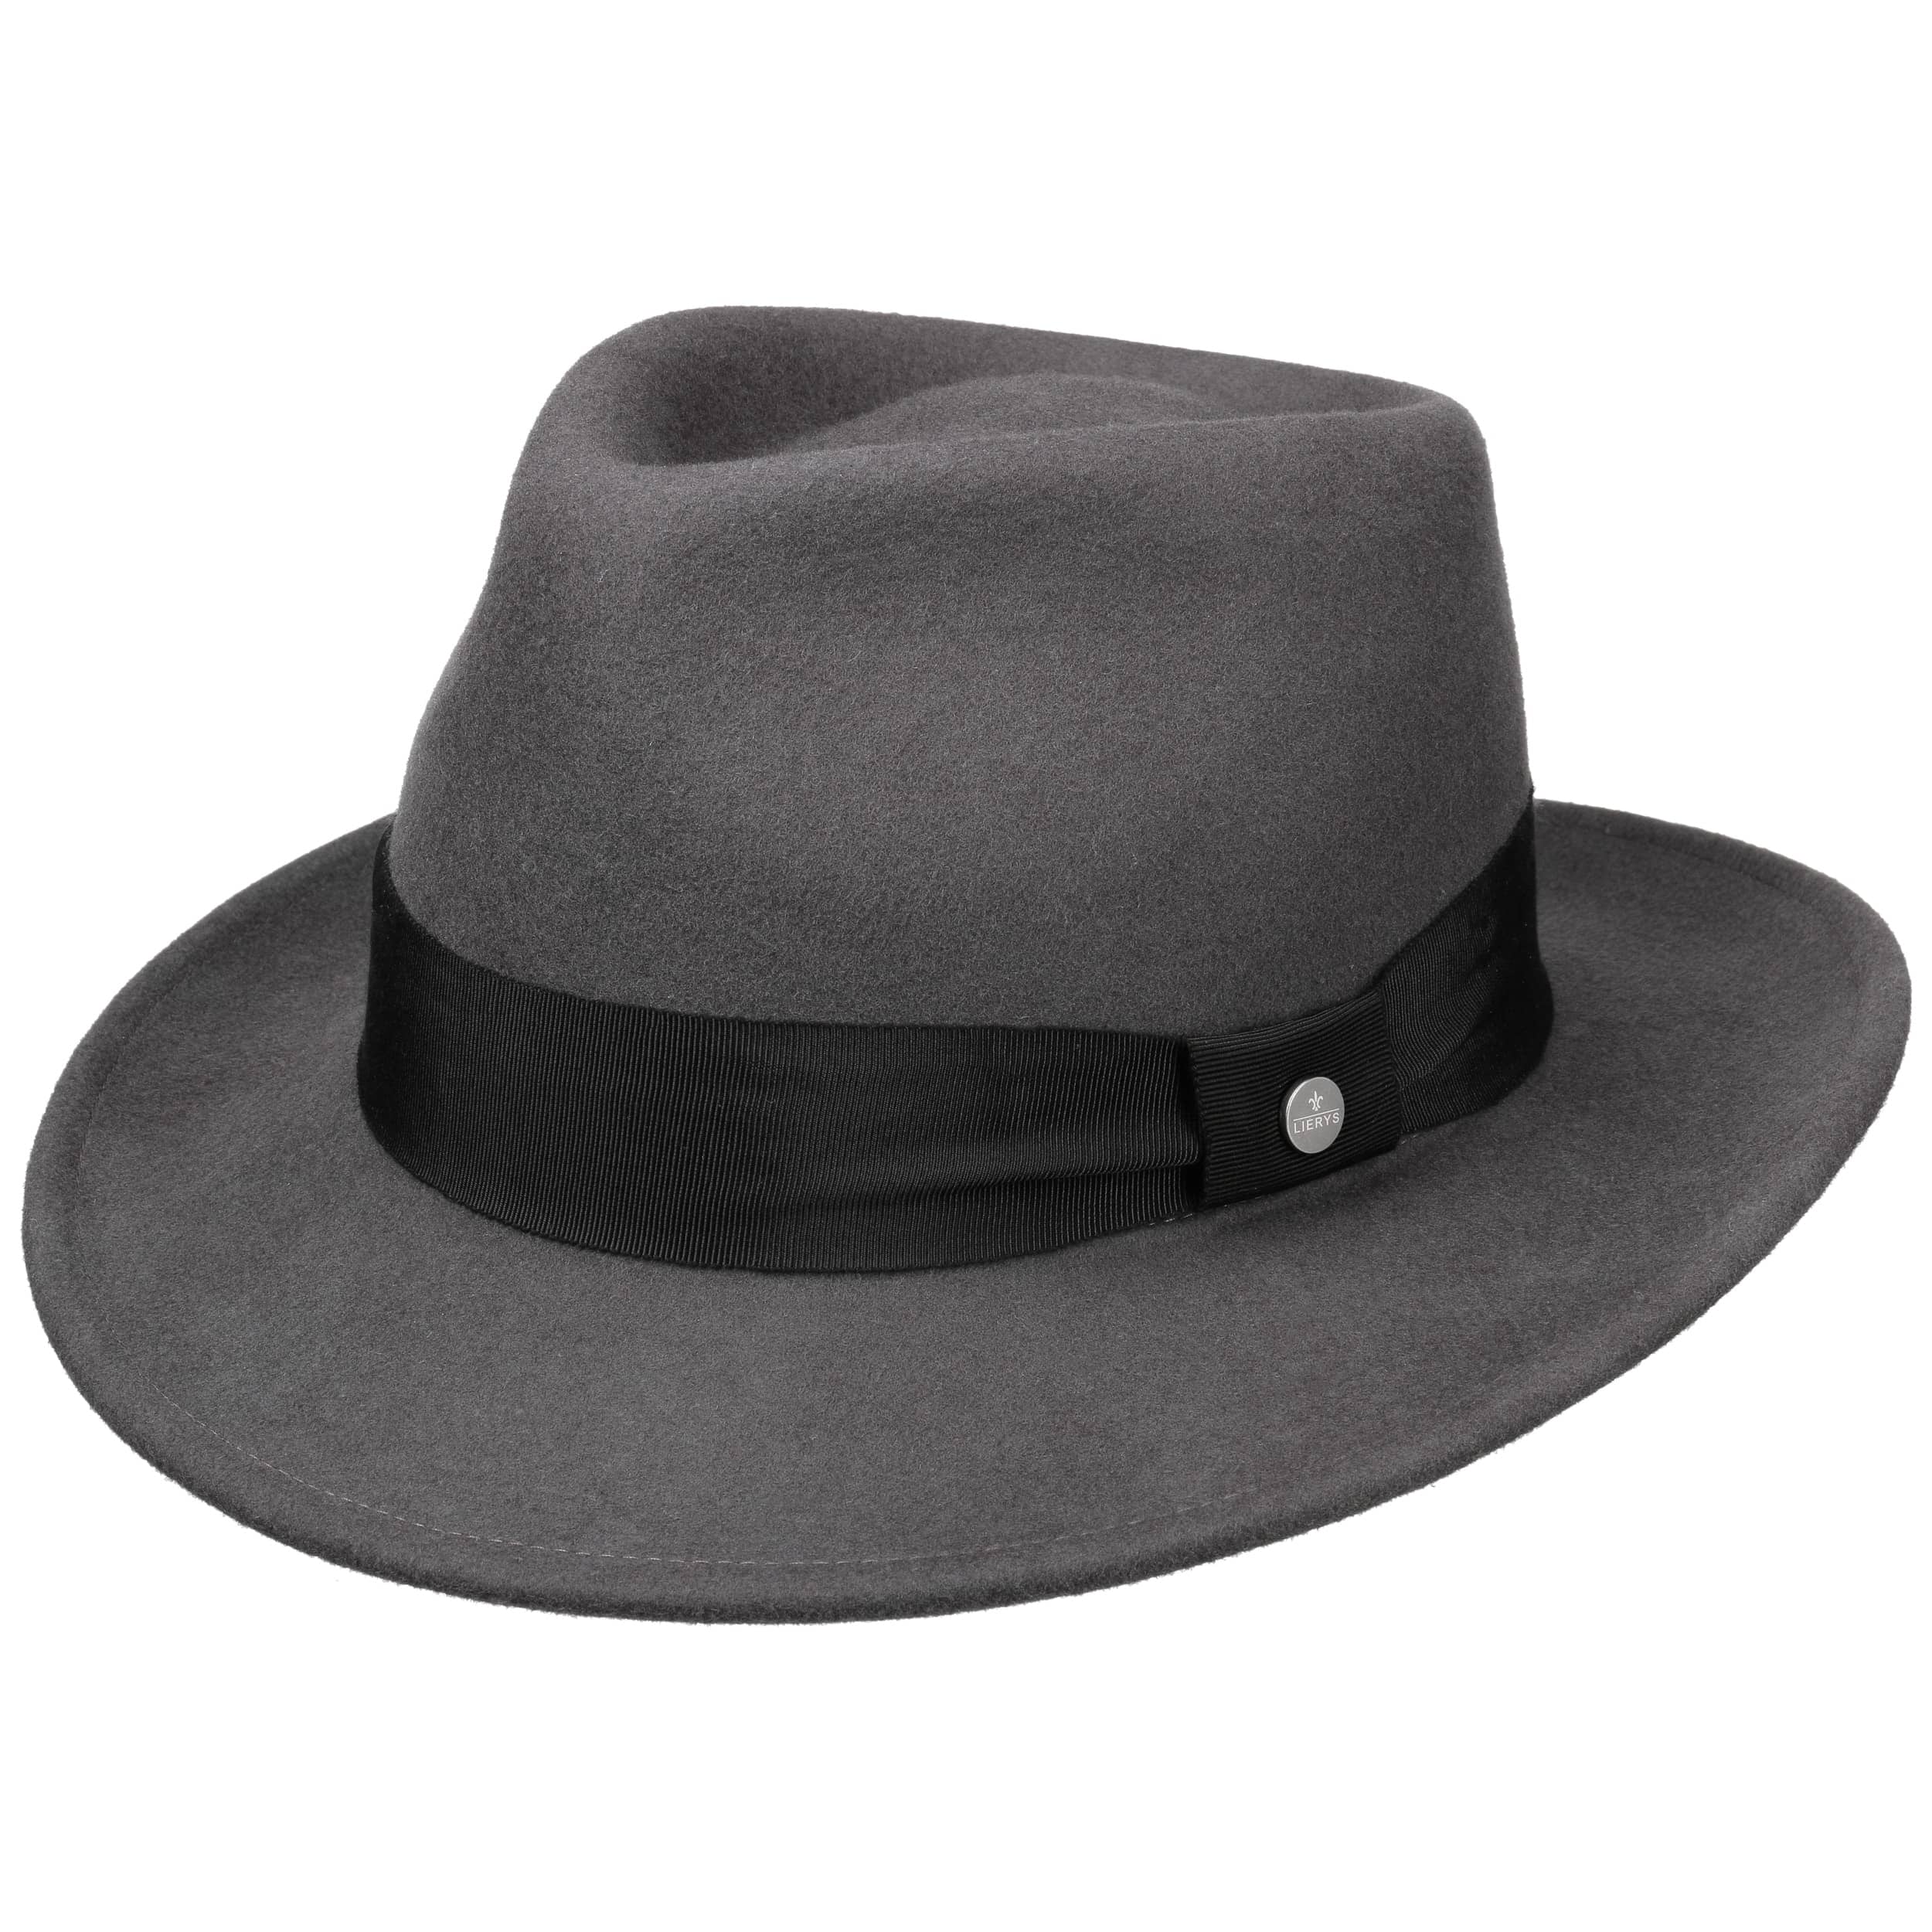 Carney Fedora Wool Hat by Lierys - 79,95